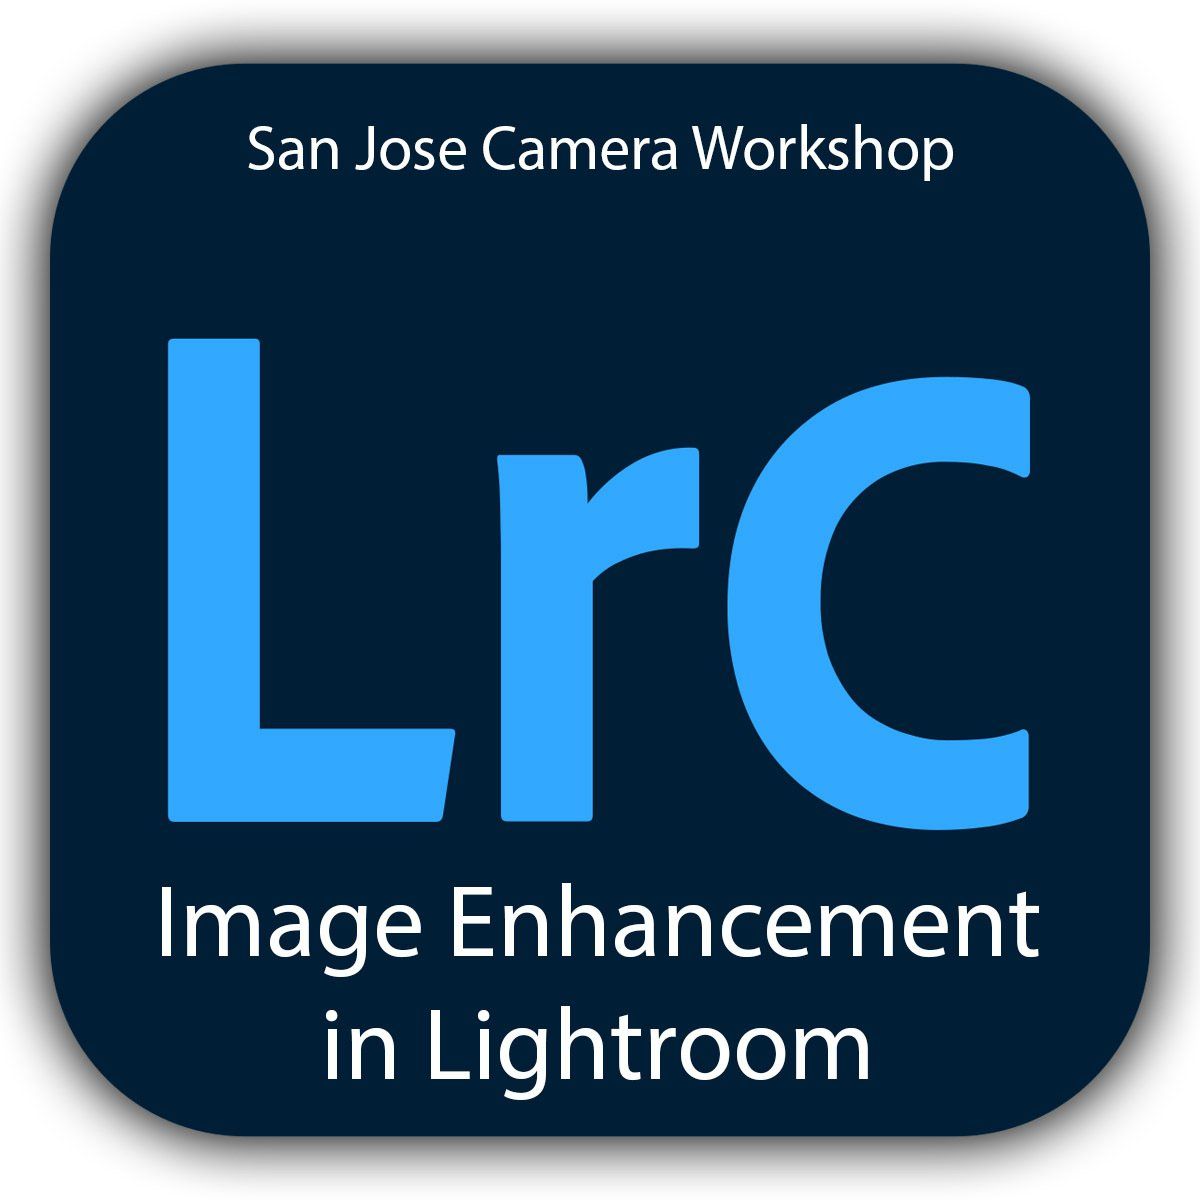 Image Enhancement in Lightroom